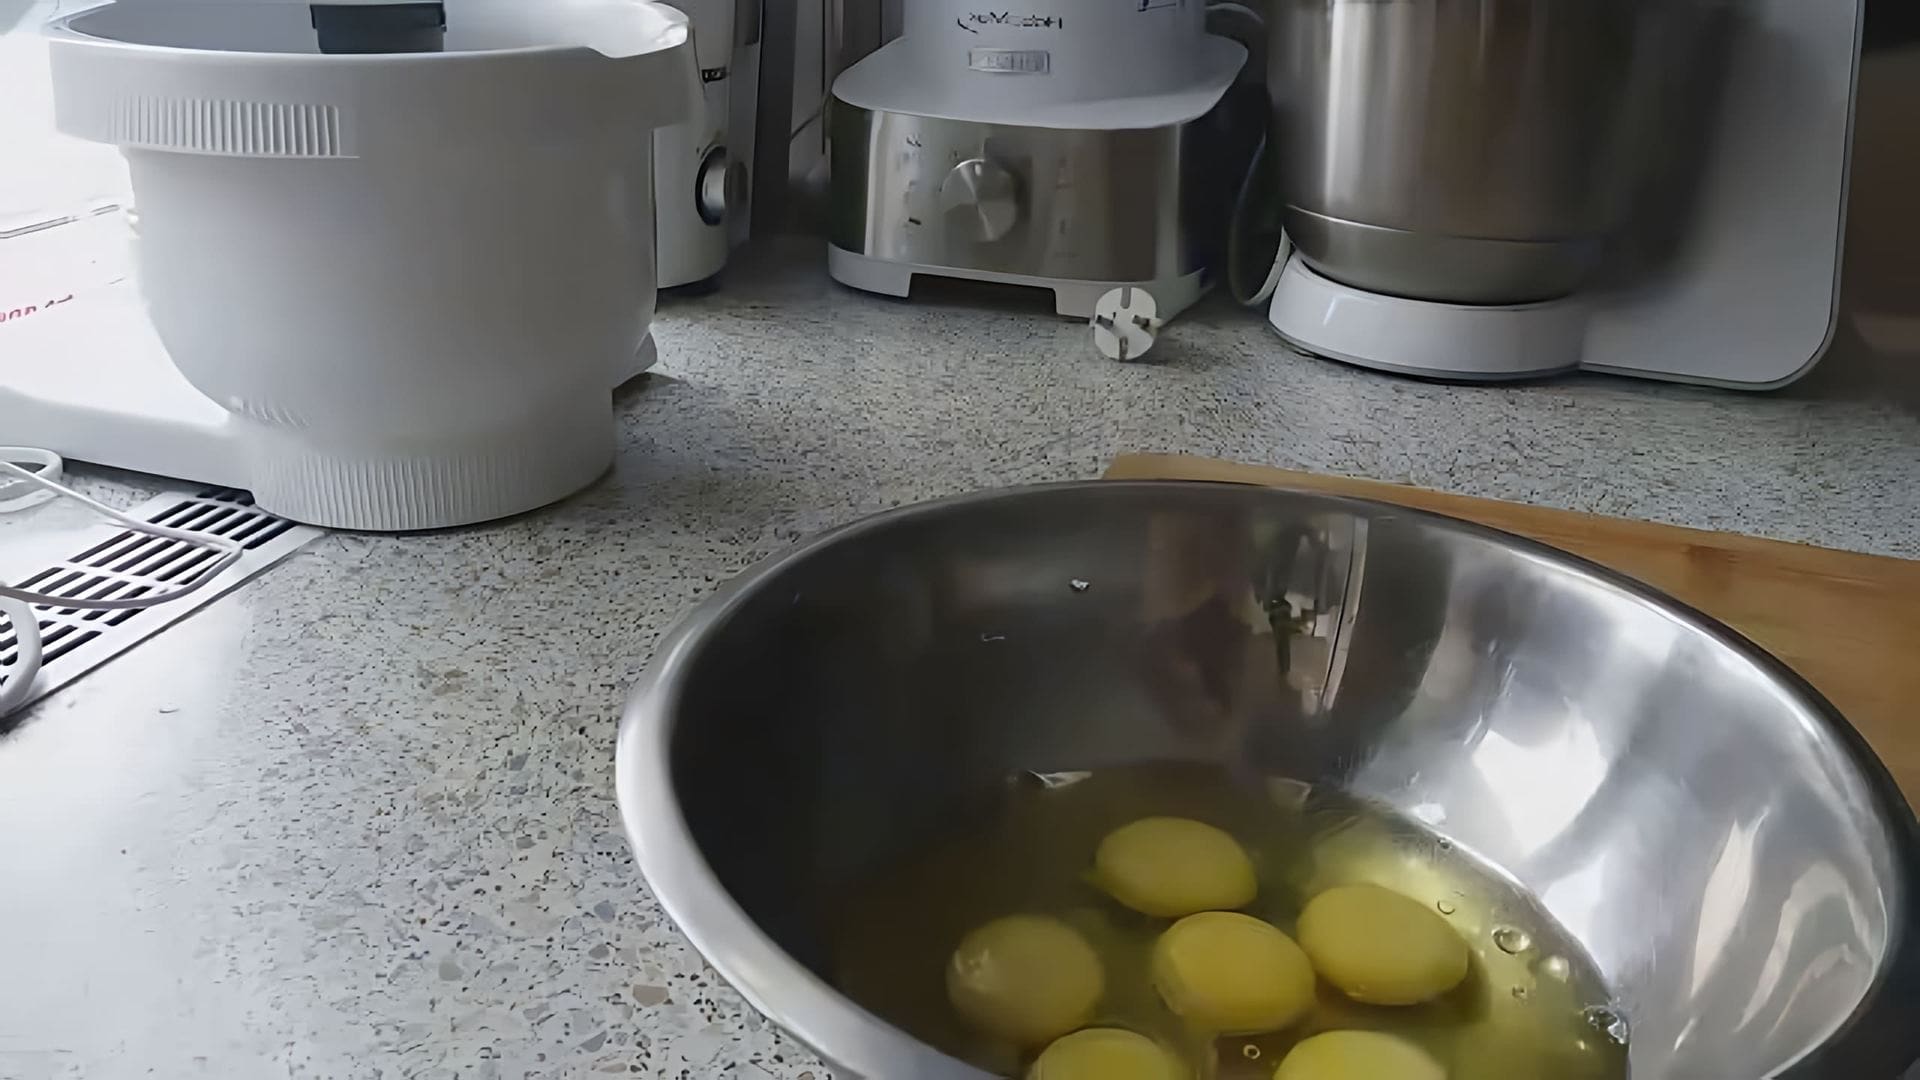 Яичные блинчики "ПРОЩЕ ПРОСТОГО" - это видео-ролик, который демонстрирует процесс приготовления вкусных и простых в исполнении яичных блинчиков